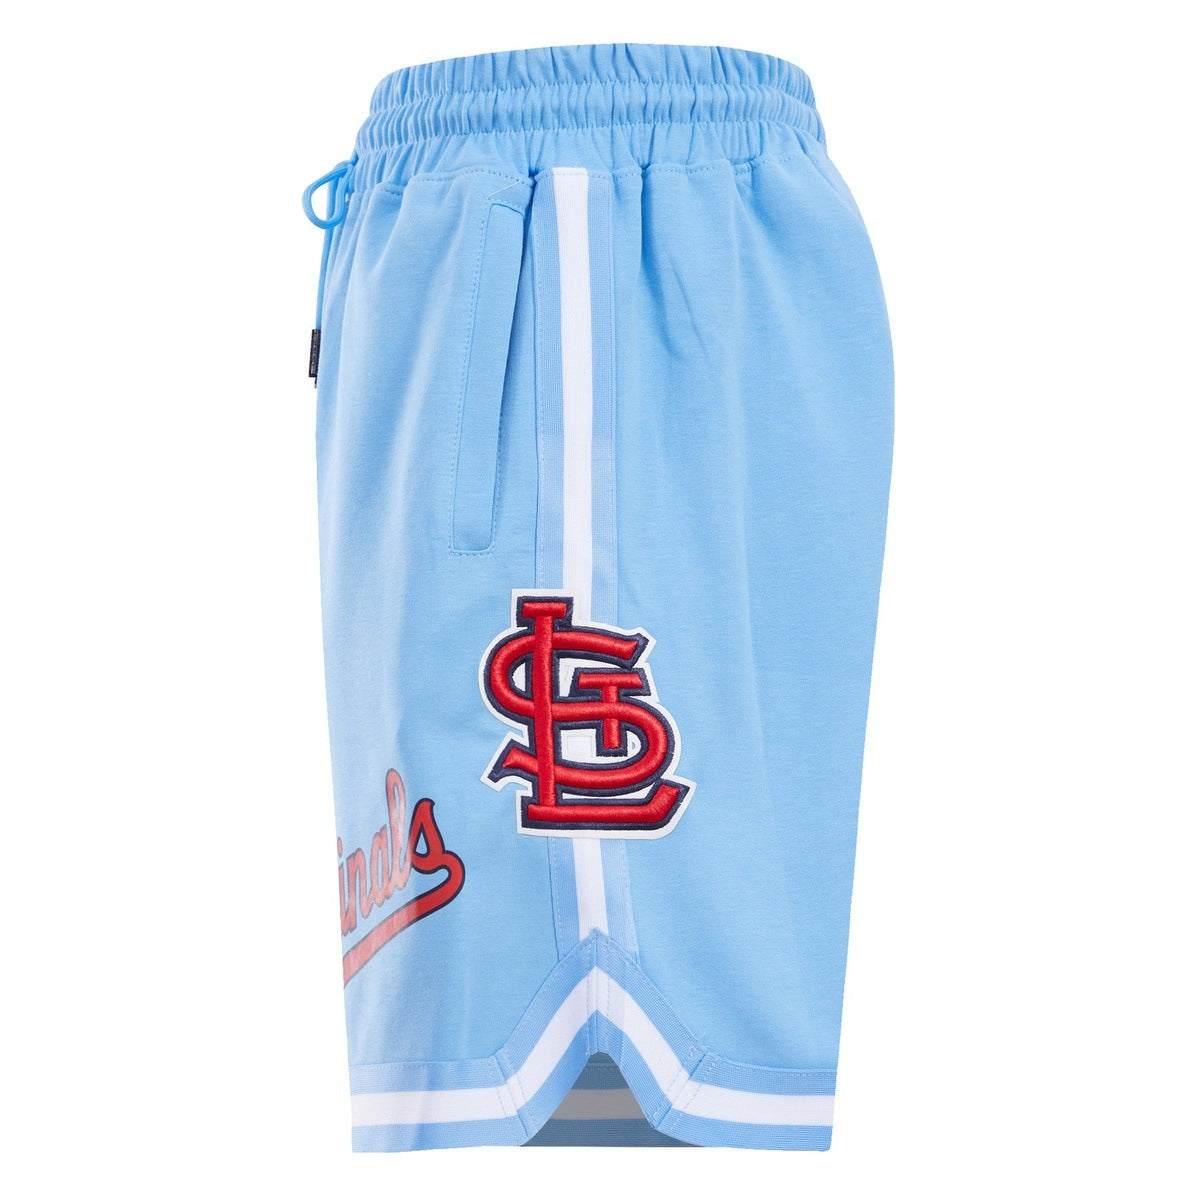 Men's St. Louis Cardinals Pro Standard White/Light Blue Blue